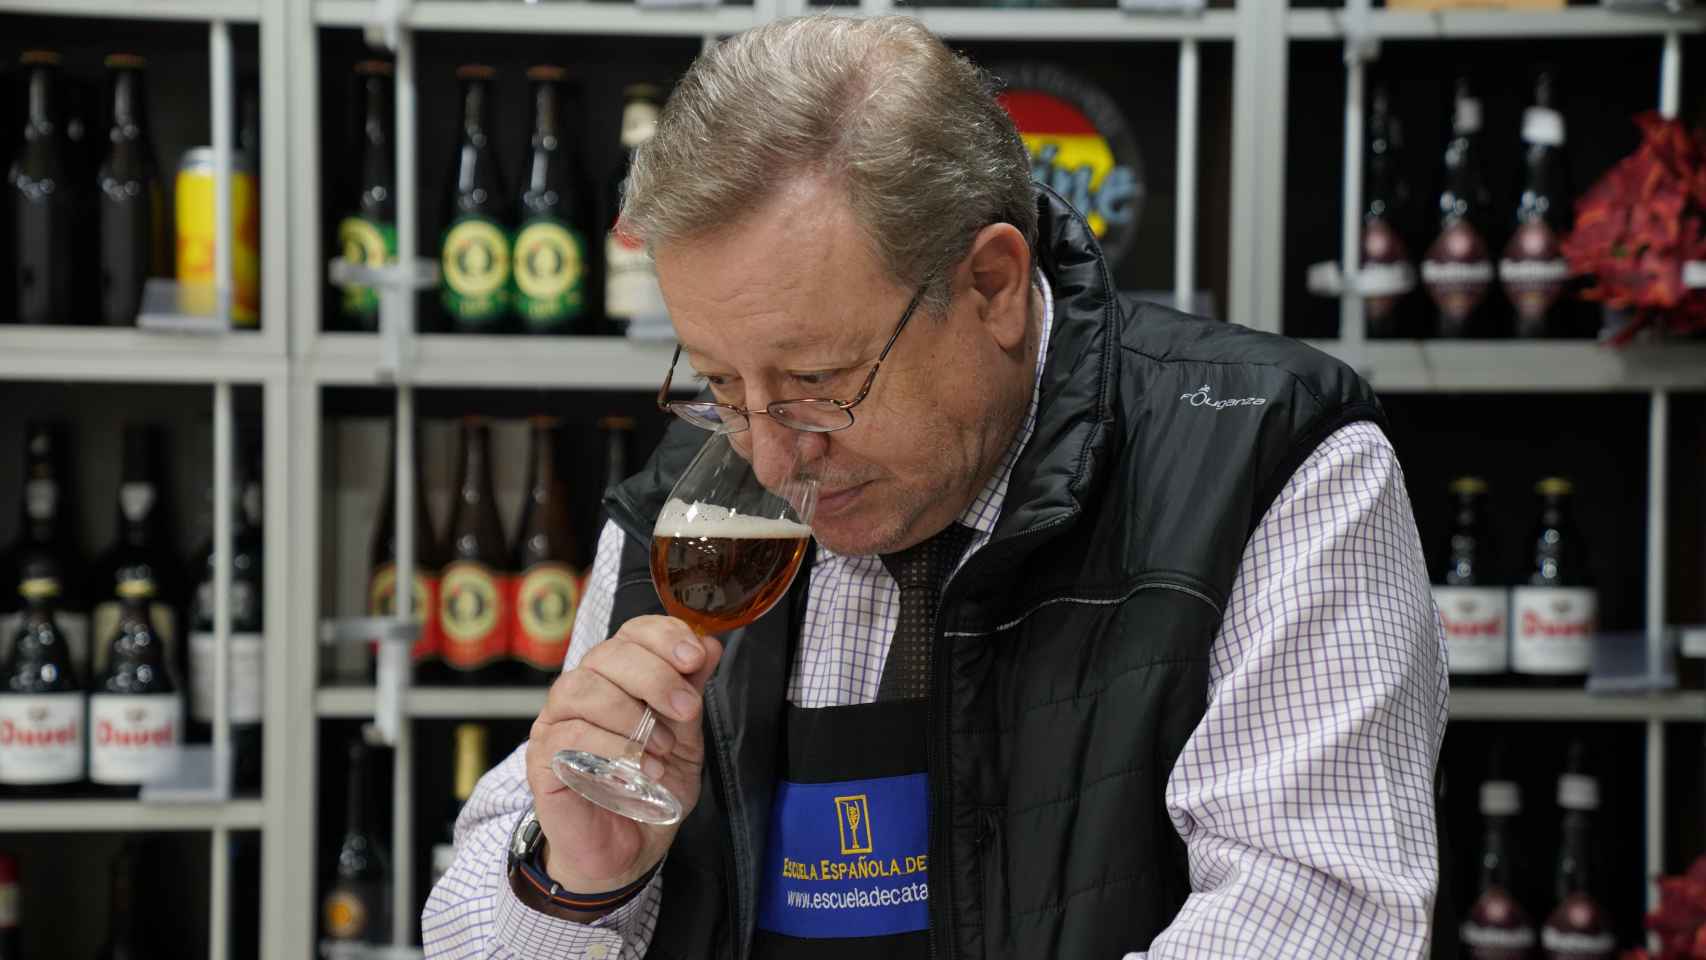 El experto Carlos Gómez huele cada una de las cervezas durante la cata para detectar sus aromas.